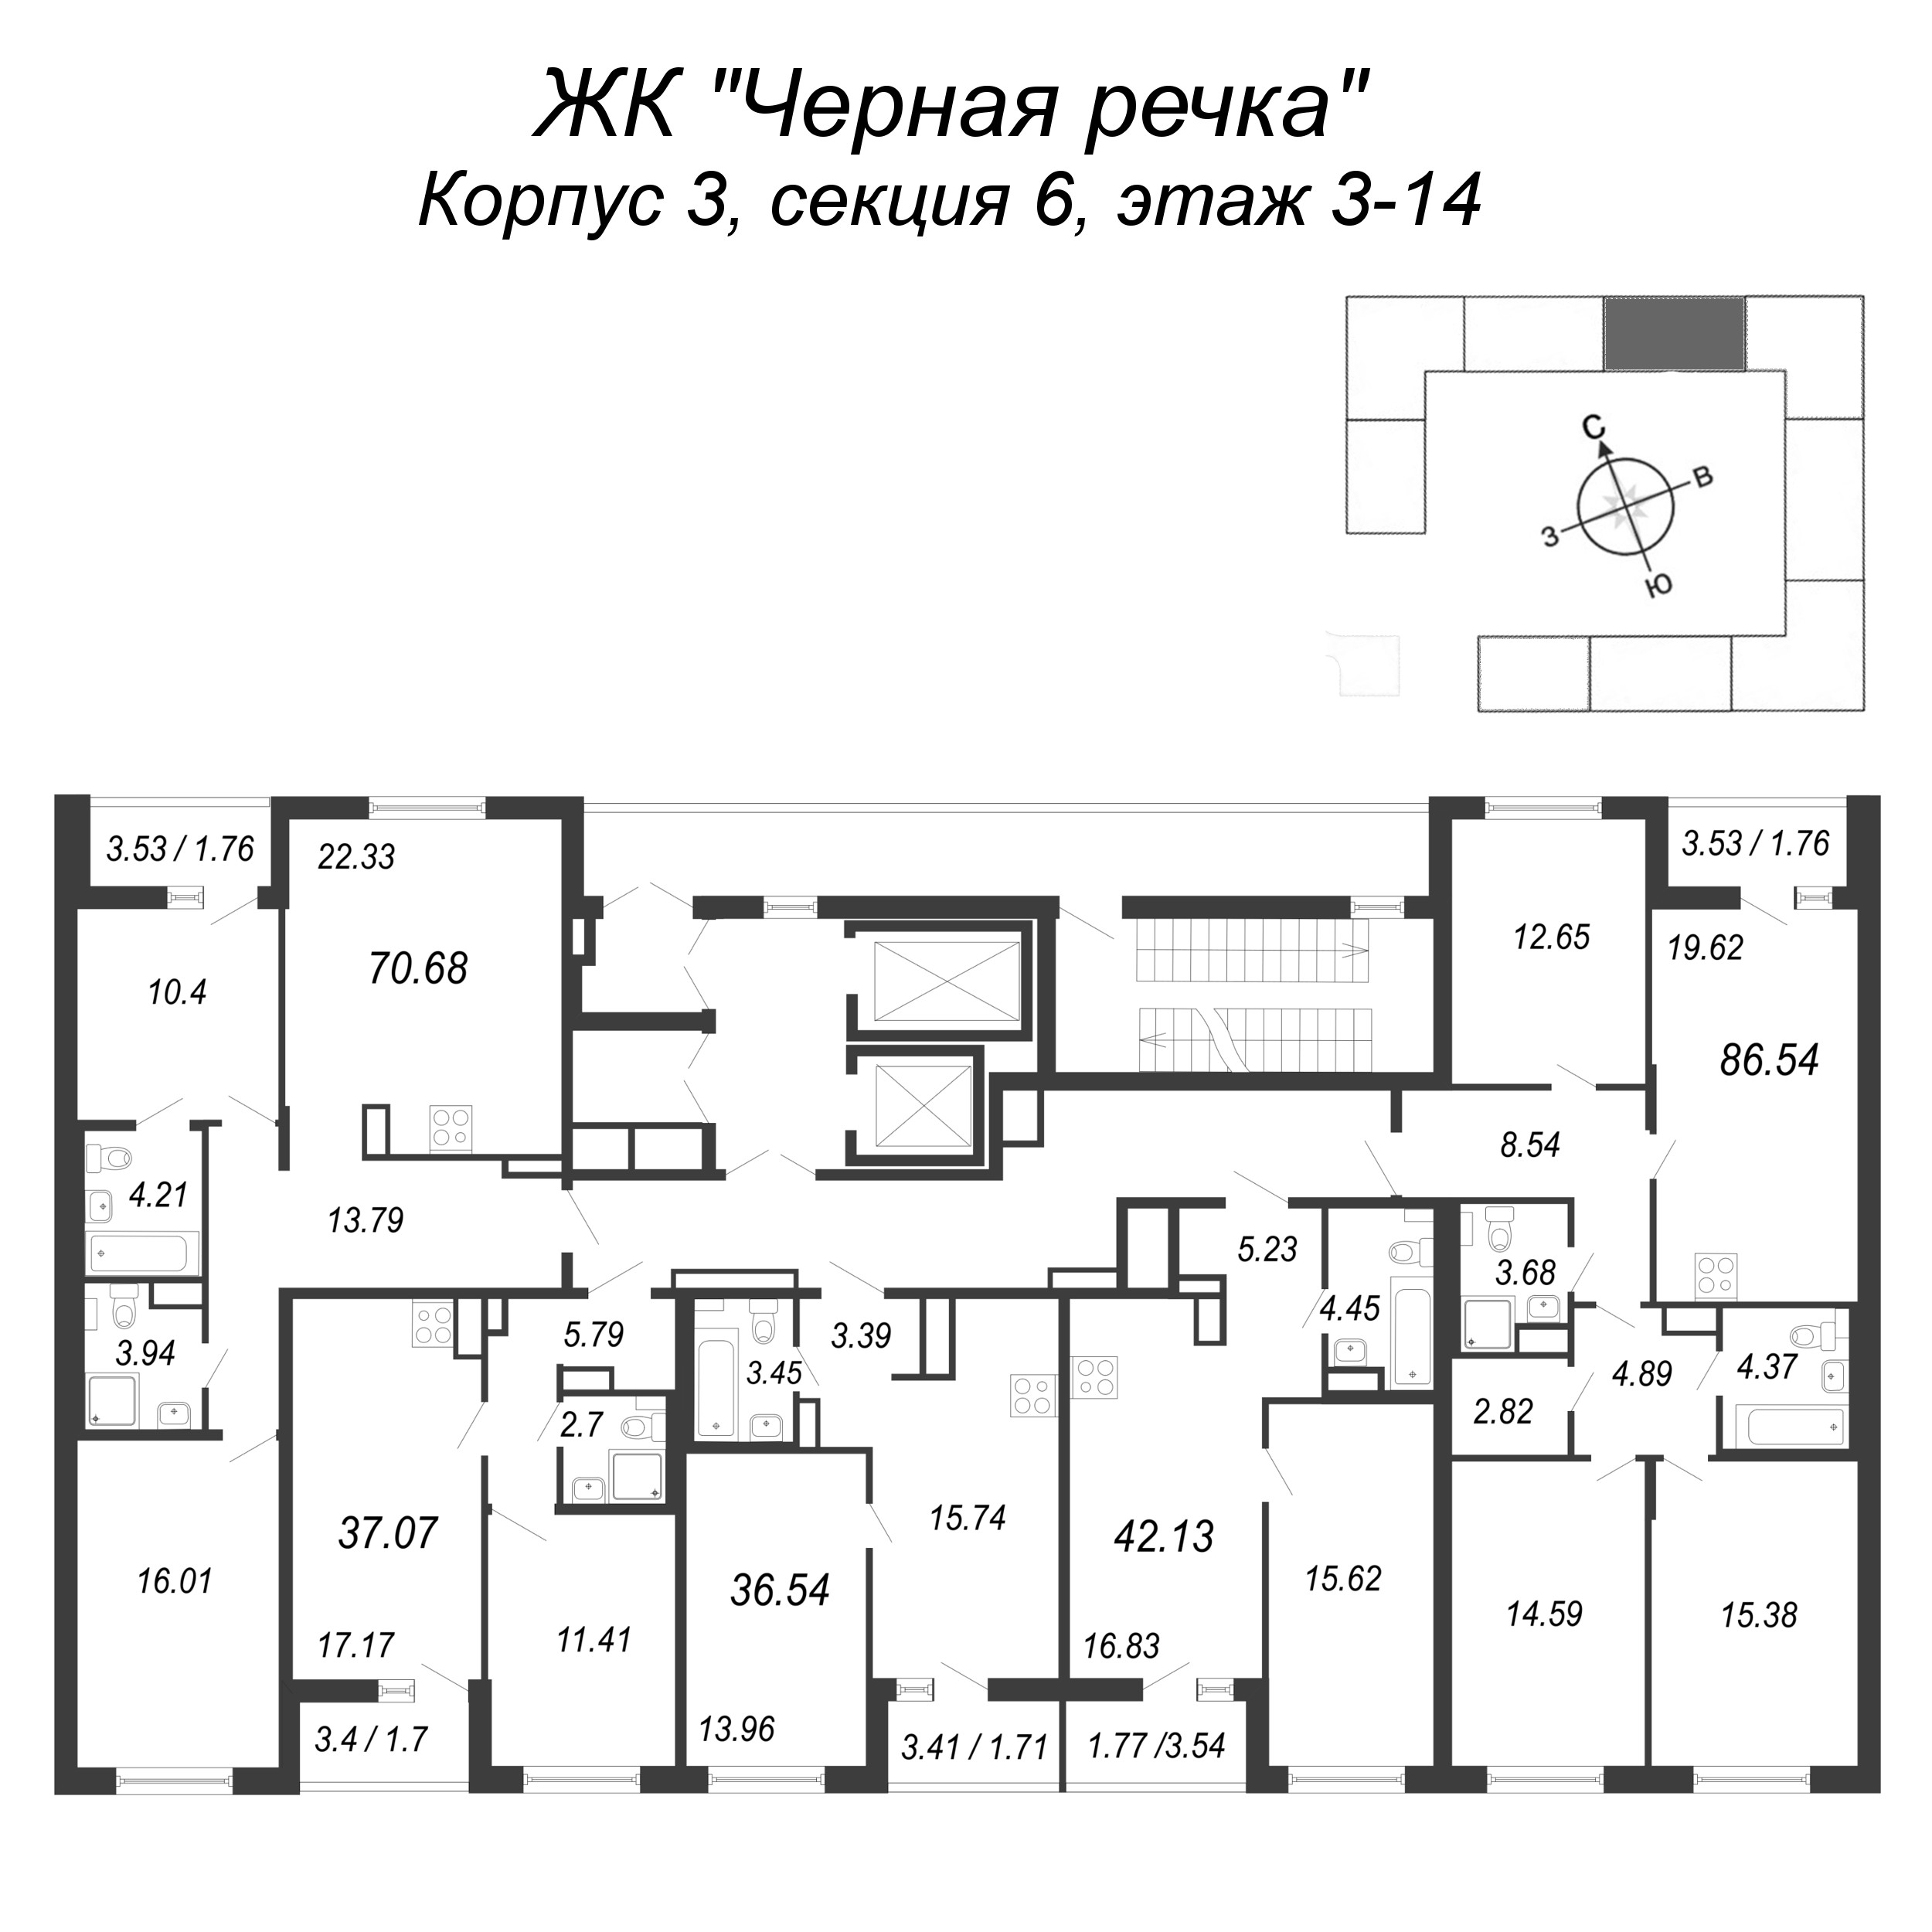 2-комнатная (Евро) квартира, 42.13 м² в ЖК "Чёрная речка" - планировка этажа